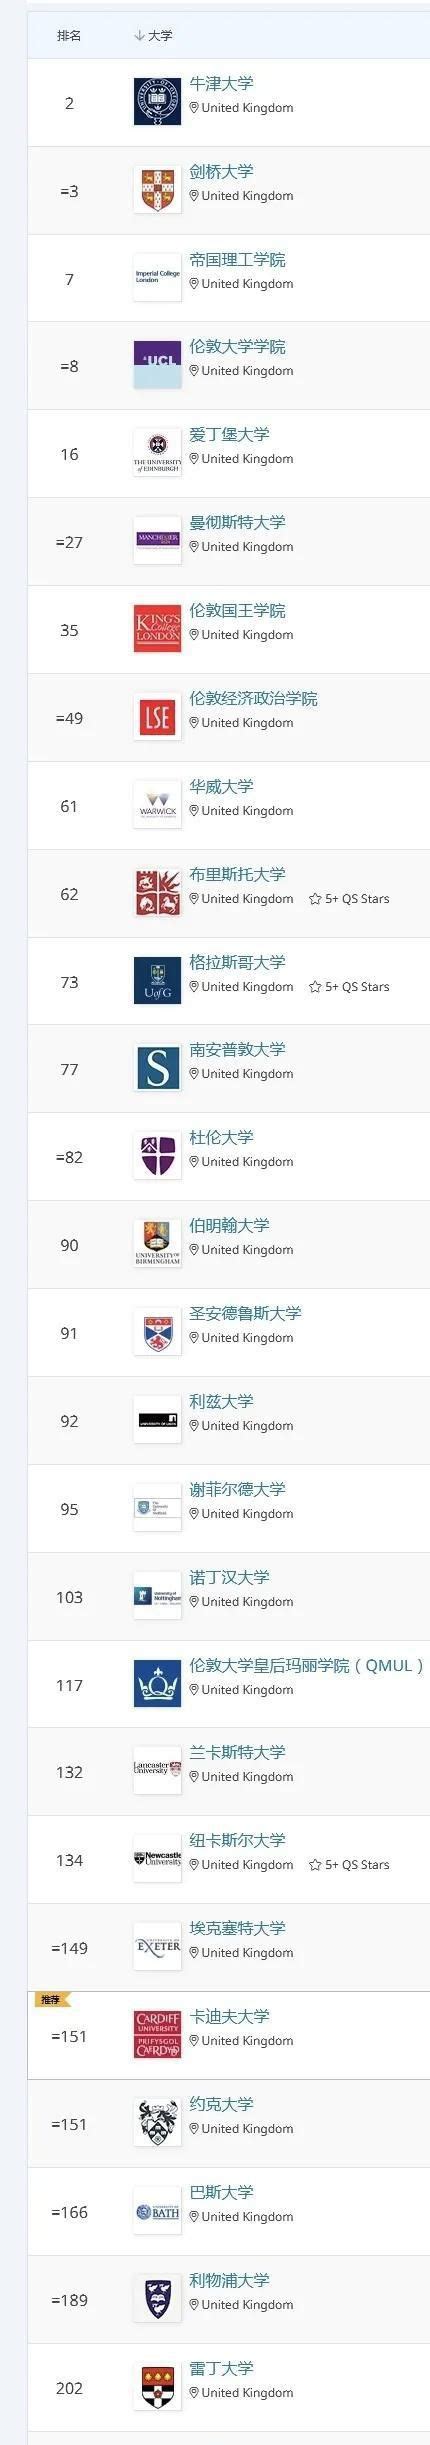 2022年英国大学排名 英国大学排名前十名